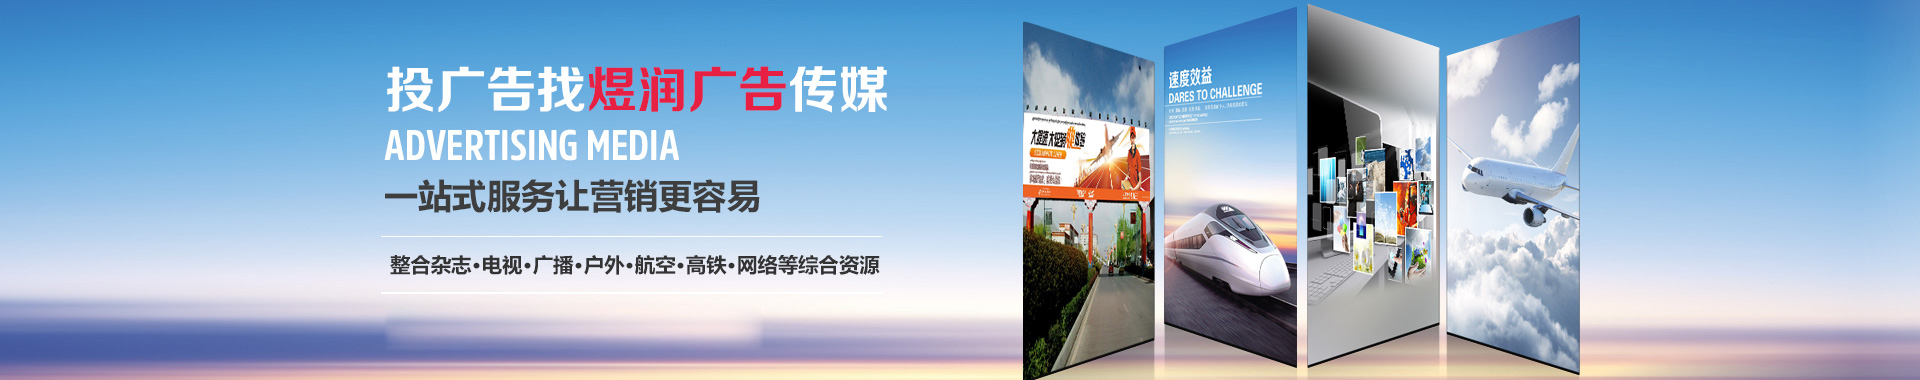 中国旅游杂志广告/杂志广告电话及价格/杂志发行量